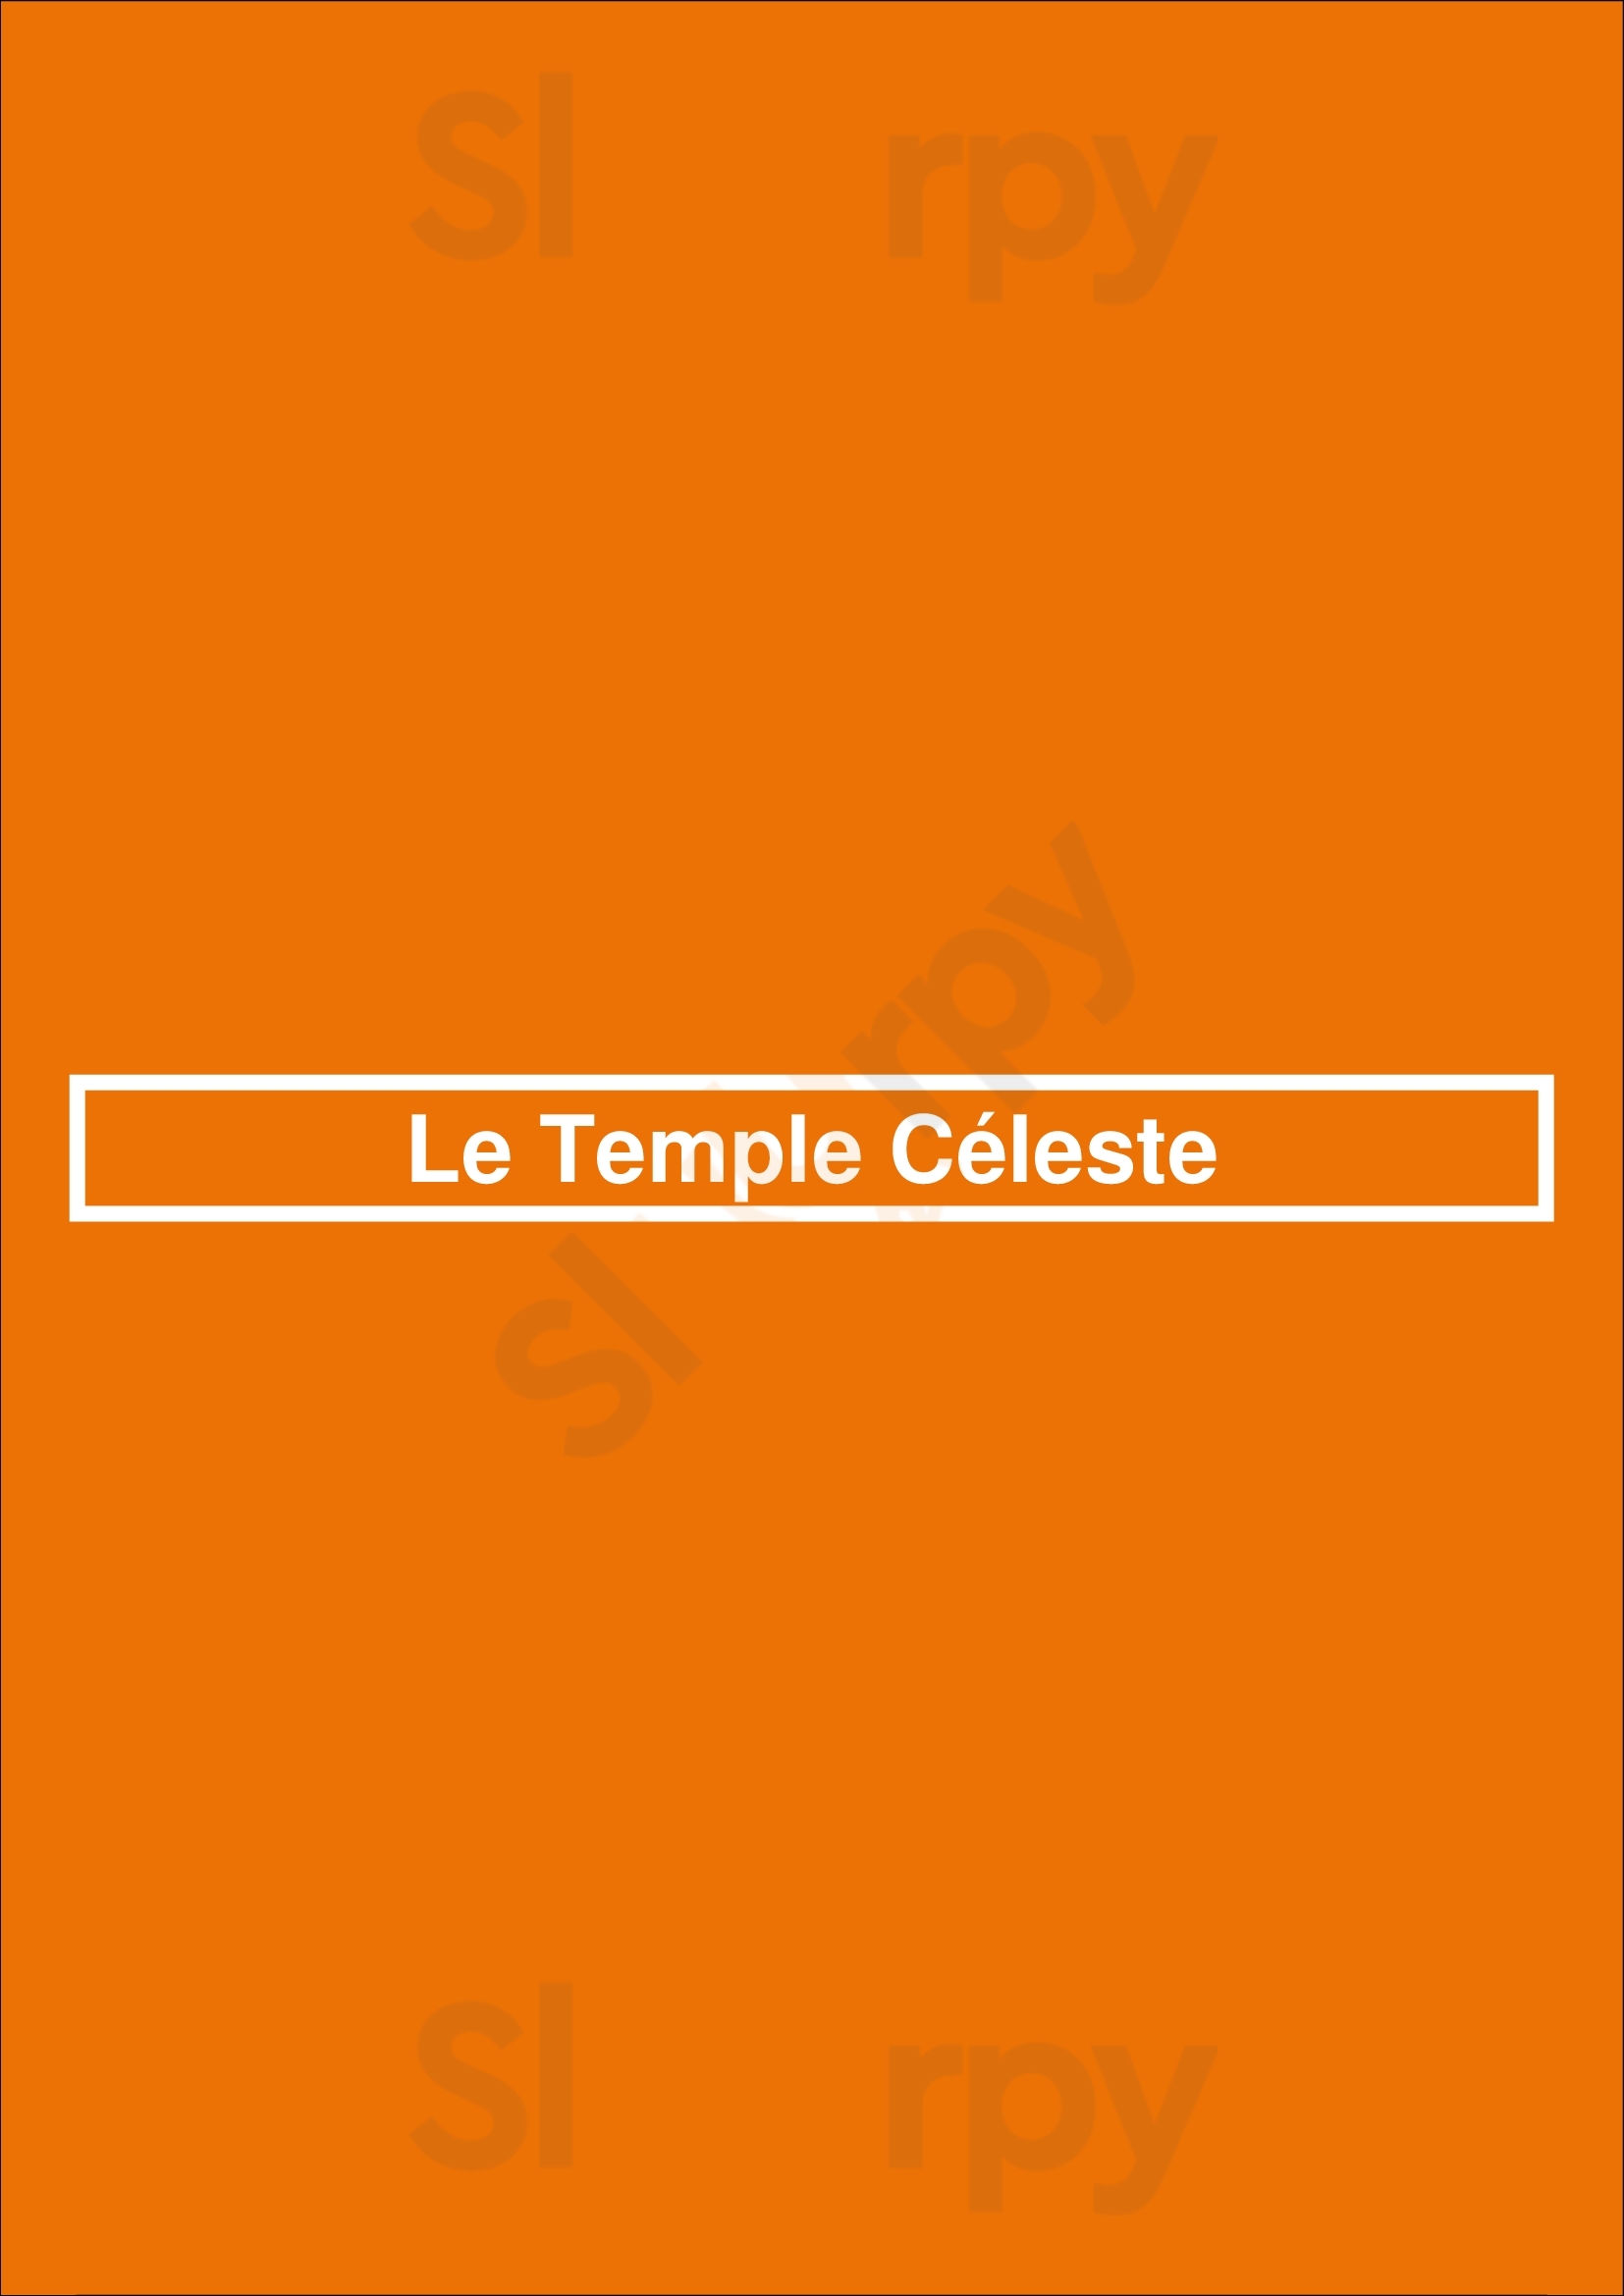 Le Temple Céleste Paris Menu - 1